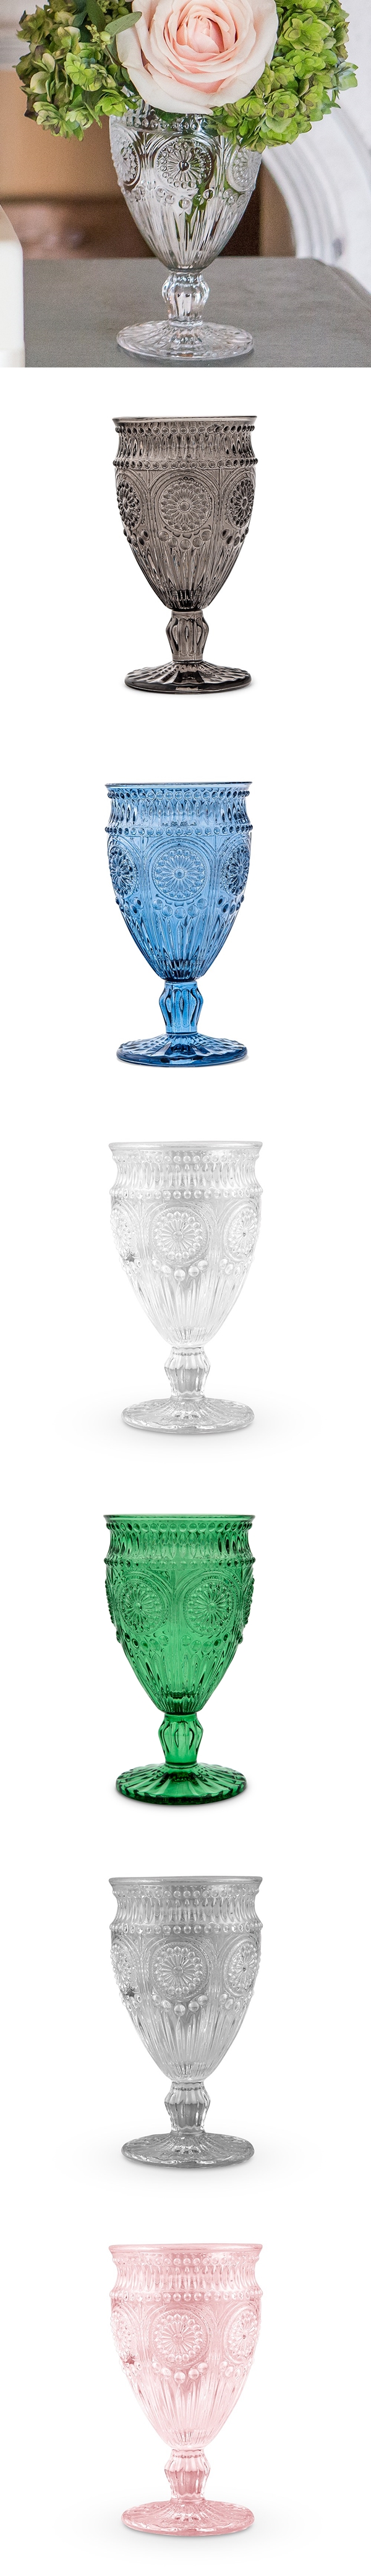 Weddingstar Vintage-Inspired Pressed-Glass Goblet (Assorted Colors)